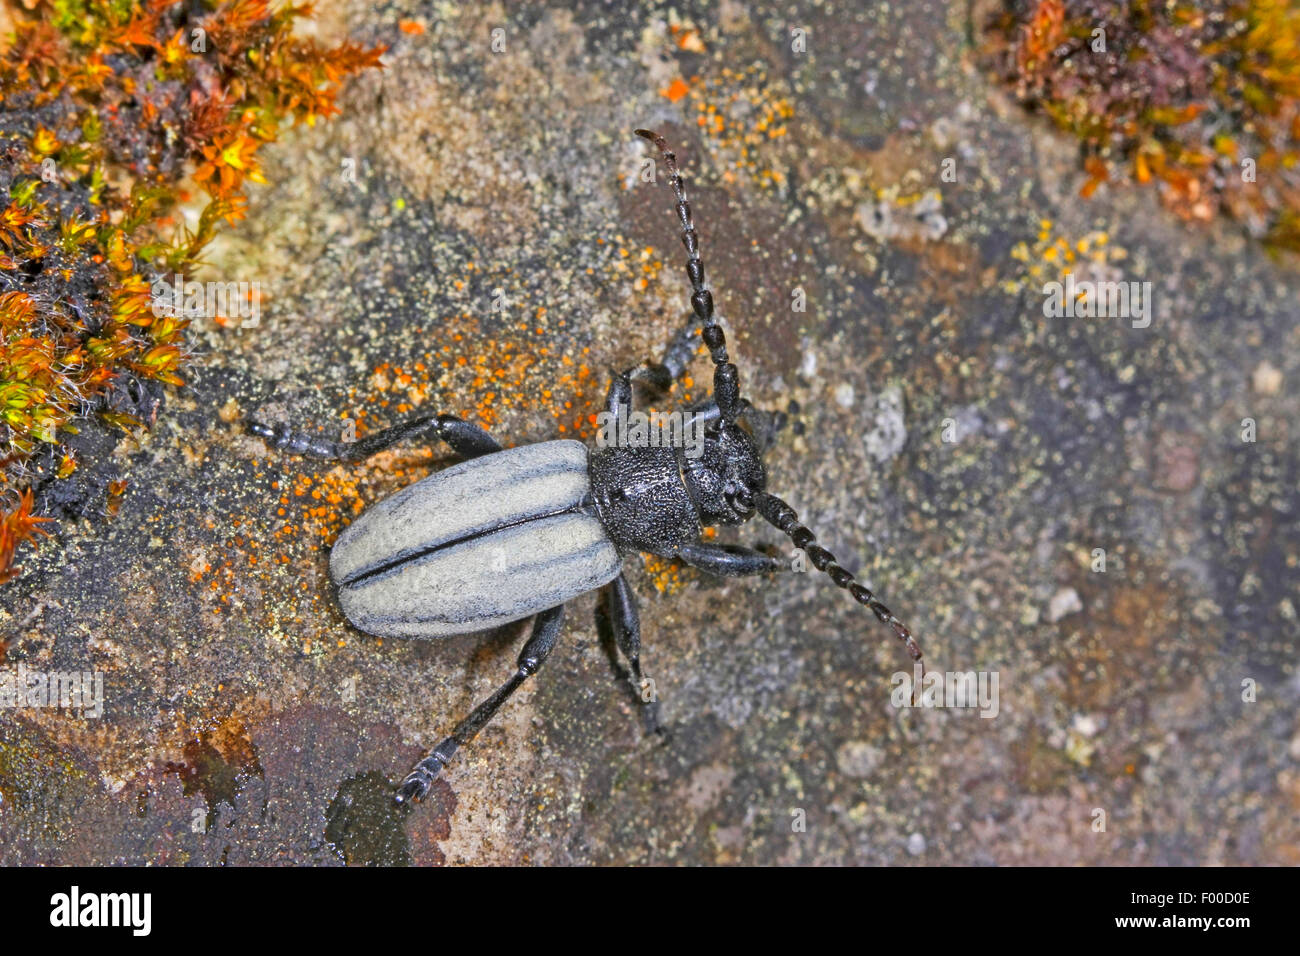 Se alimentan de pasto, voladora escarabajo Escarabajo (Longhorn Dorcadion fuliginator, Iberodorcadion fuliginator), sobre una piedra, Alemania Foto de stock